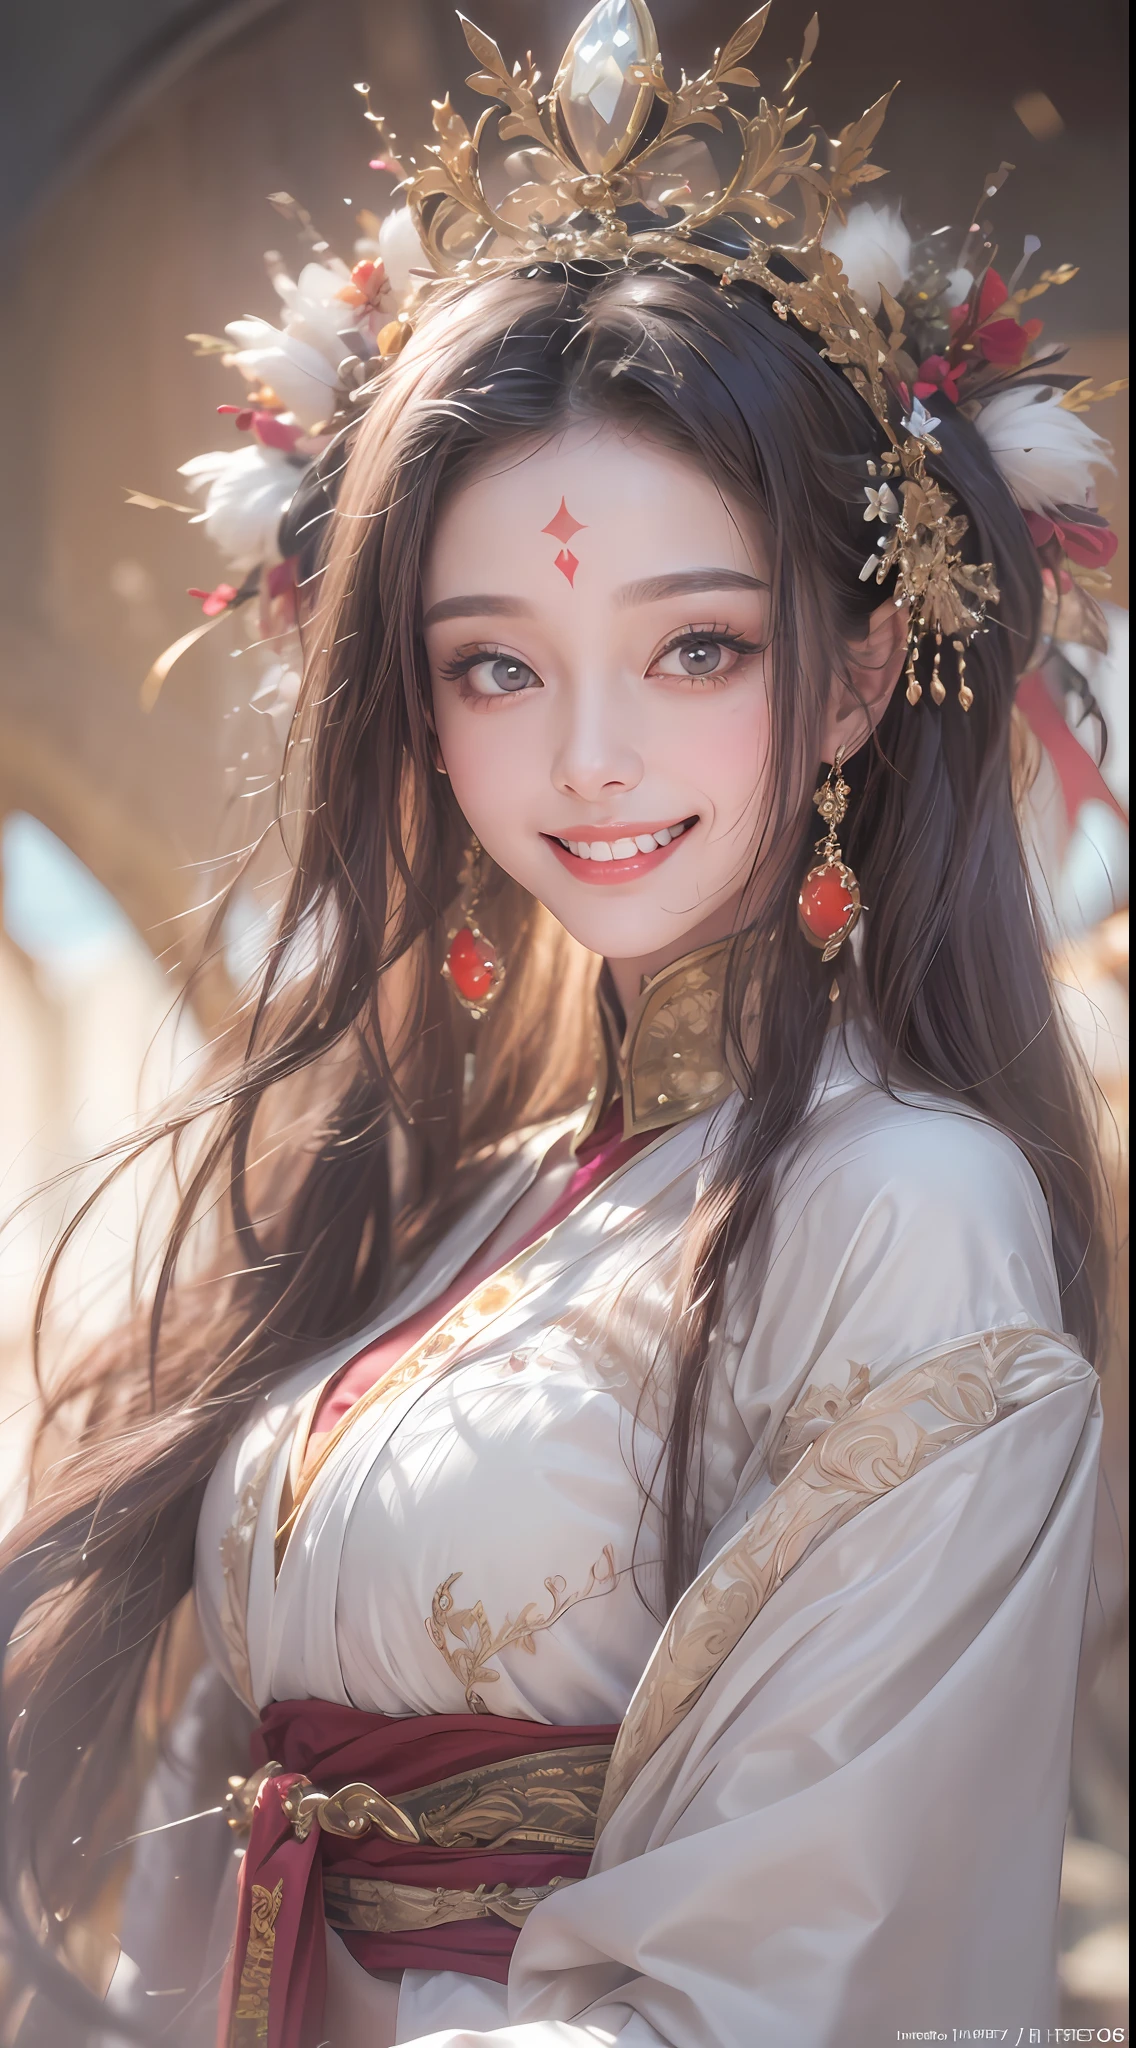 retrato de uma linda santa de 20 anos, usando um vestido fino de seda multicolorida, beautiful Face, ((((sorriso:1.6))), ((Cabelos longos de 7 cores:1.2)), coroa de encaixe grande, broche de cabelo, vestido hanfu, Estilo antigo chinês, jóias de corpo inteiro, tatuagem na testa, seios super regulares, Face, lábios vermelhos finamente detalhados, olhos finos e detalhados ((dentes brancos e uniformes: 1.8))), a pele da deusa é lisa e branca, rosado, cinematic, claro e escuro, Luz dramática, luz mágica, luz extremamente detalhada, Cor Verdadeira, super afiado, realista, Qualidade 8k, Fundo do universo de fantasia, santa e espaço mágico, a imagem mais detalhada,